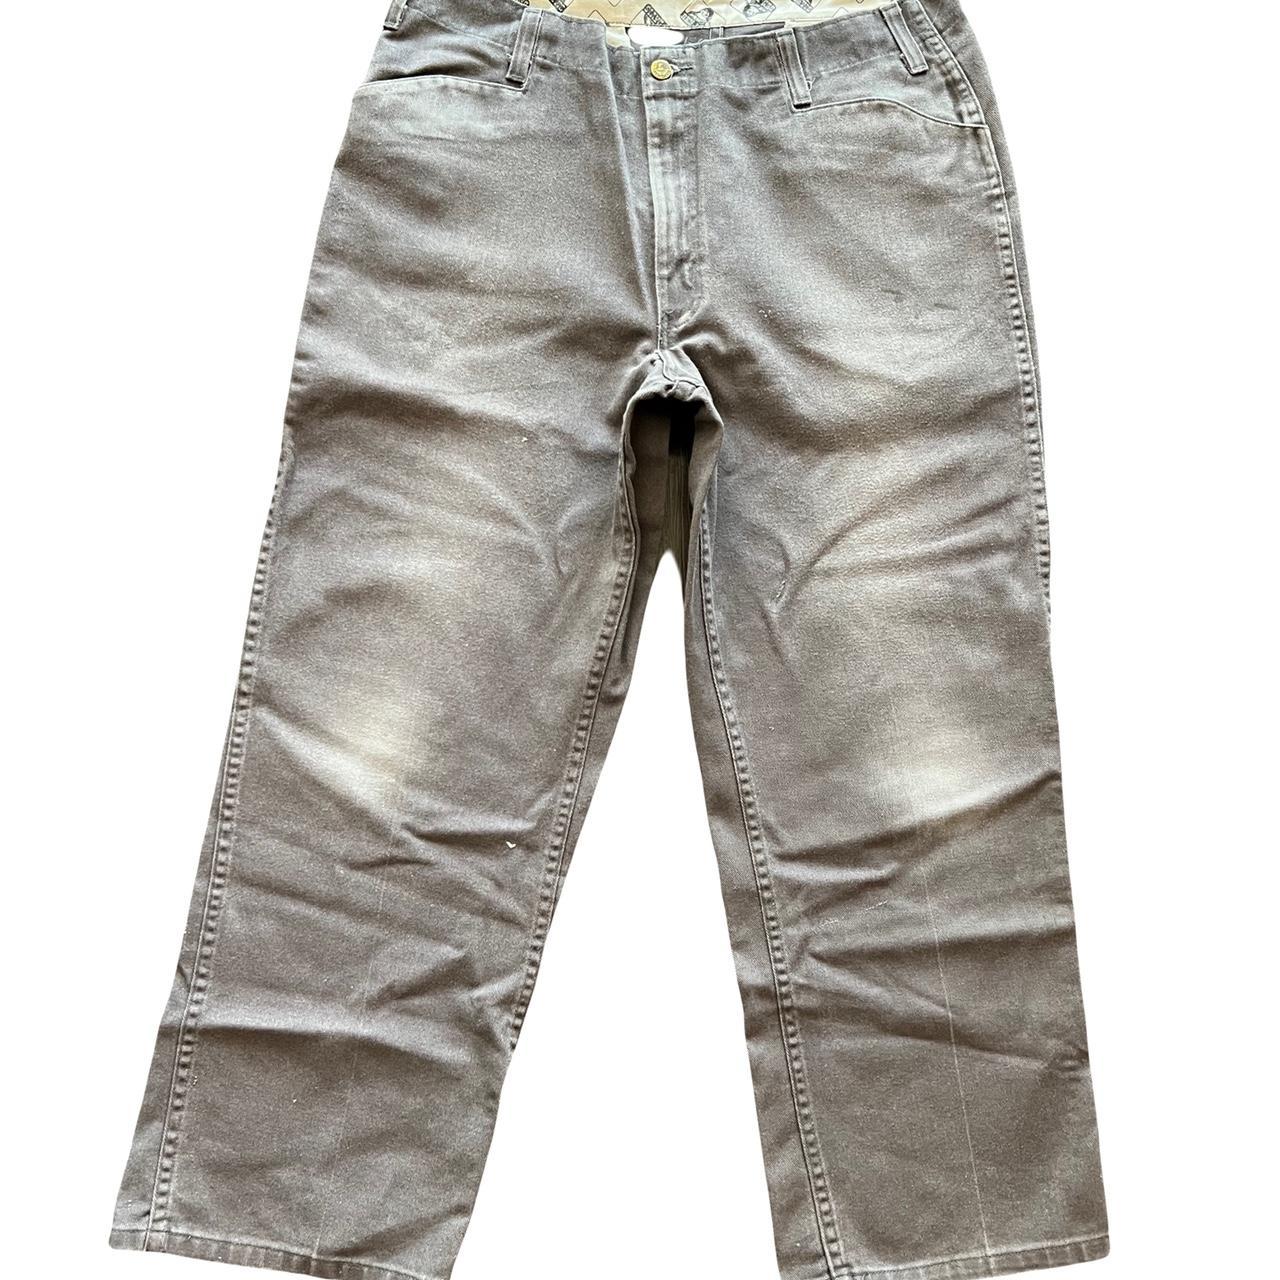 Ben Davis gray denim jeans - Depop